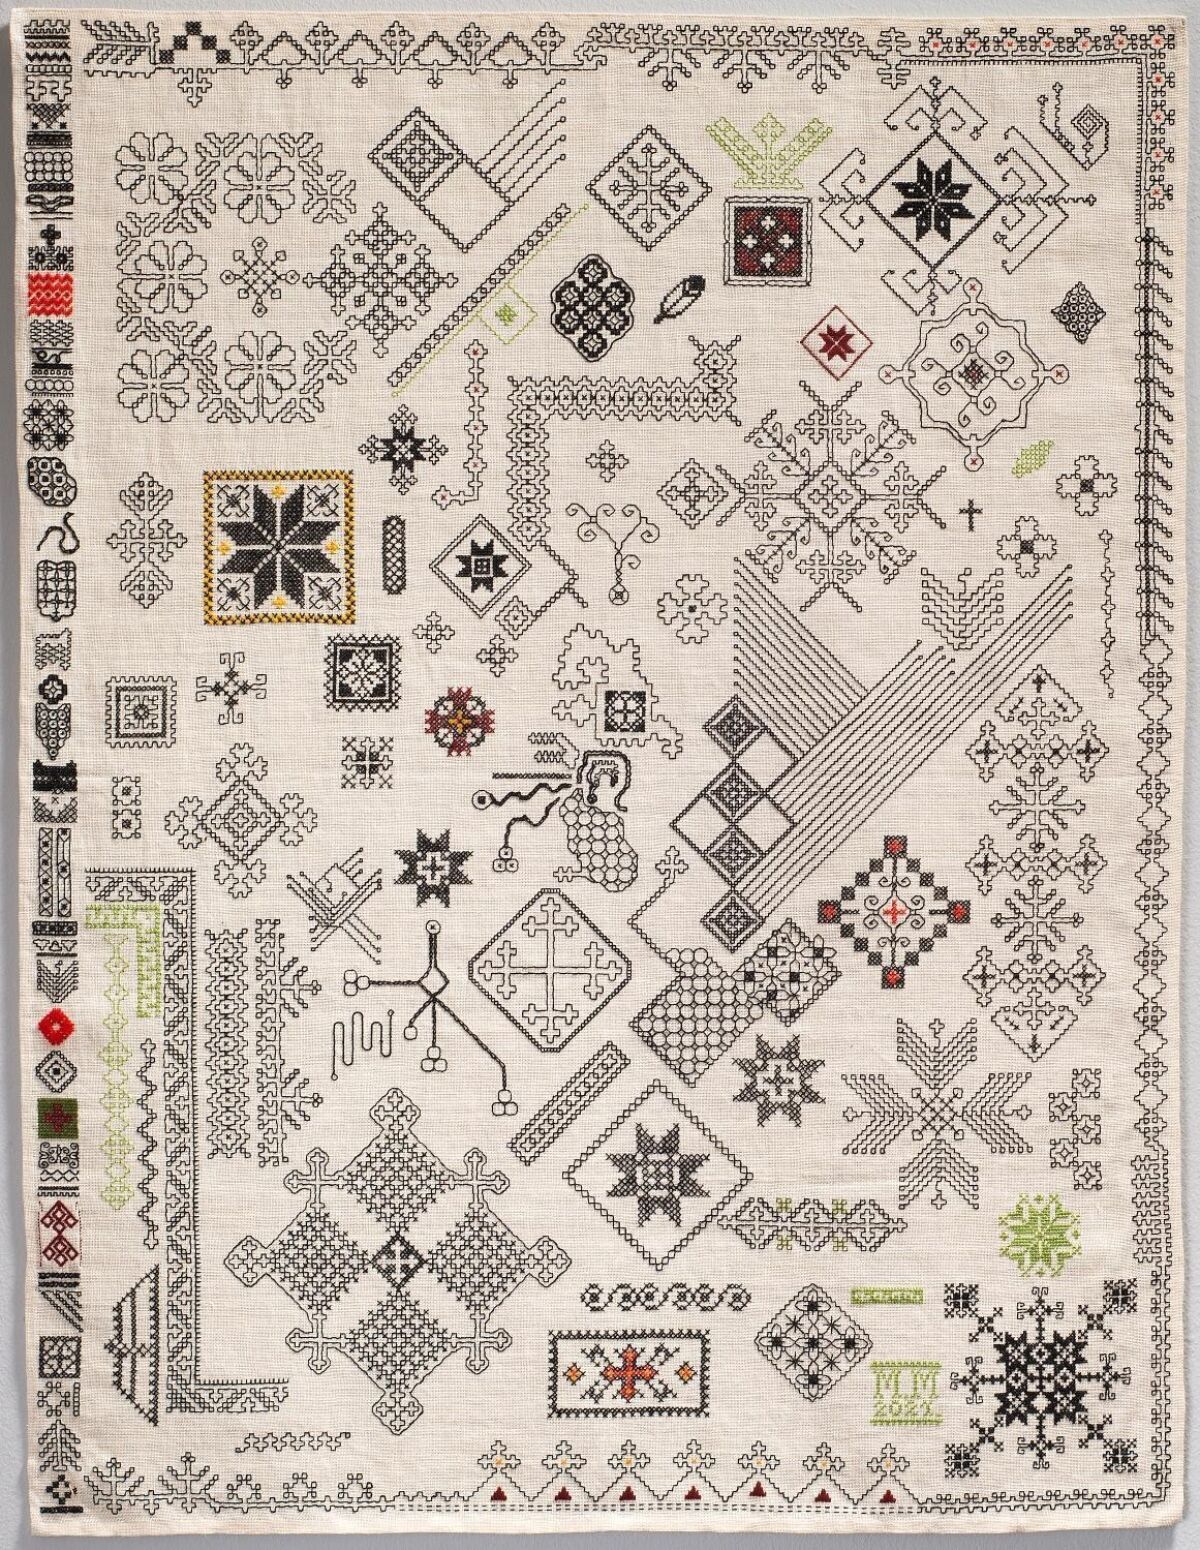 Brodert tekstil i hvitt med ulike mønstre og motiver i svart, rødt og grønt. Foto av tekstil.